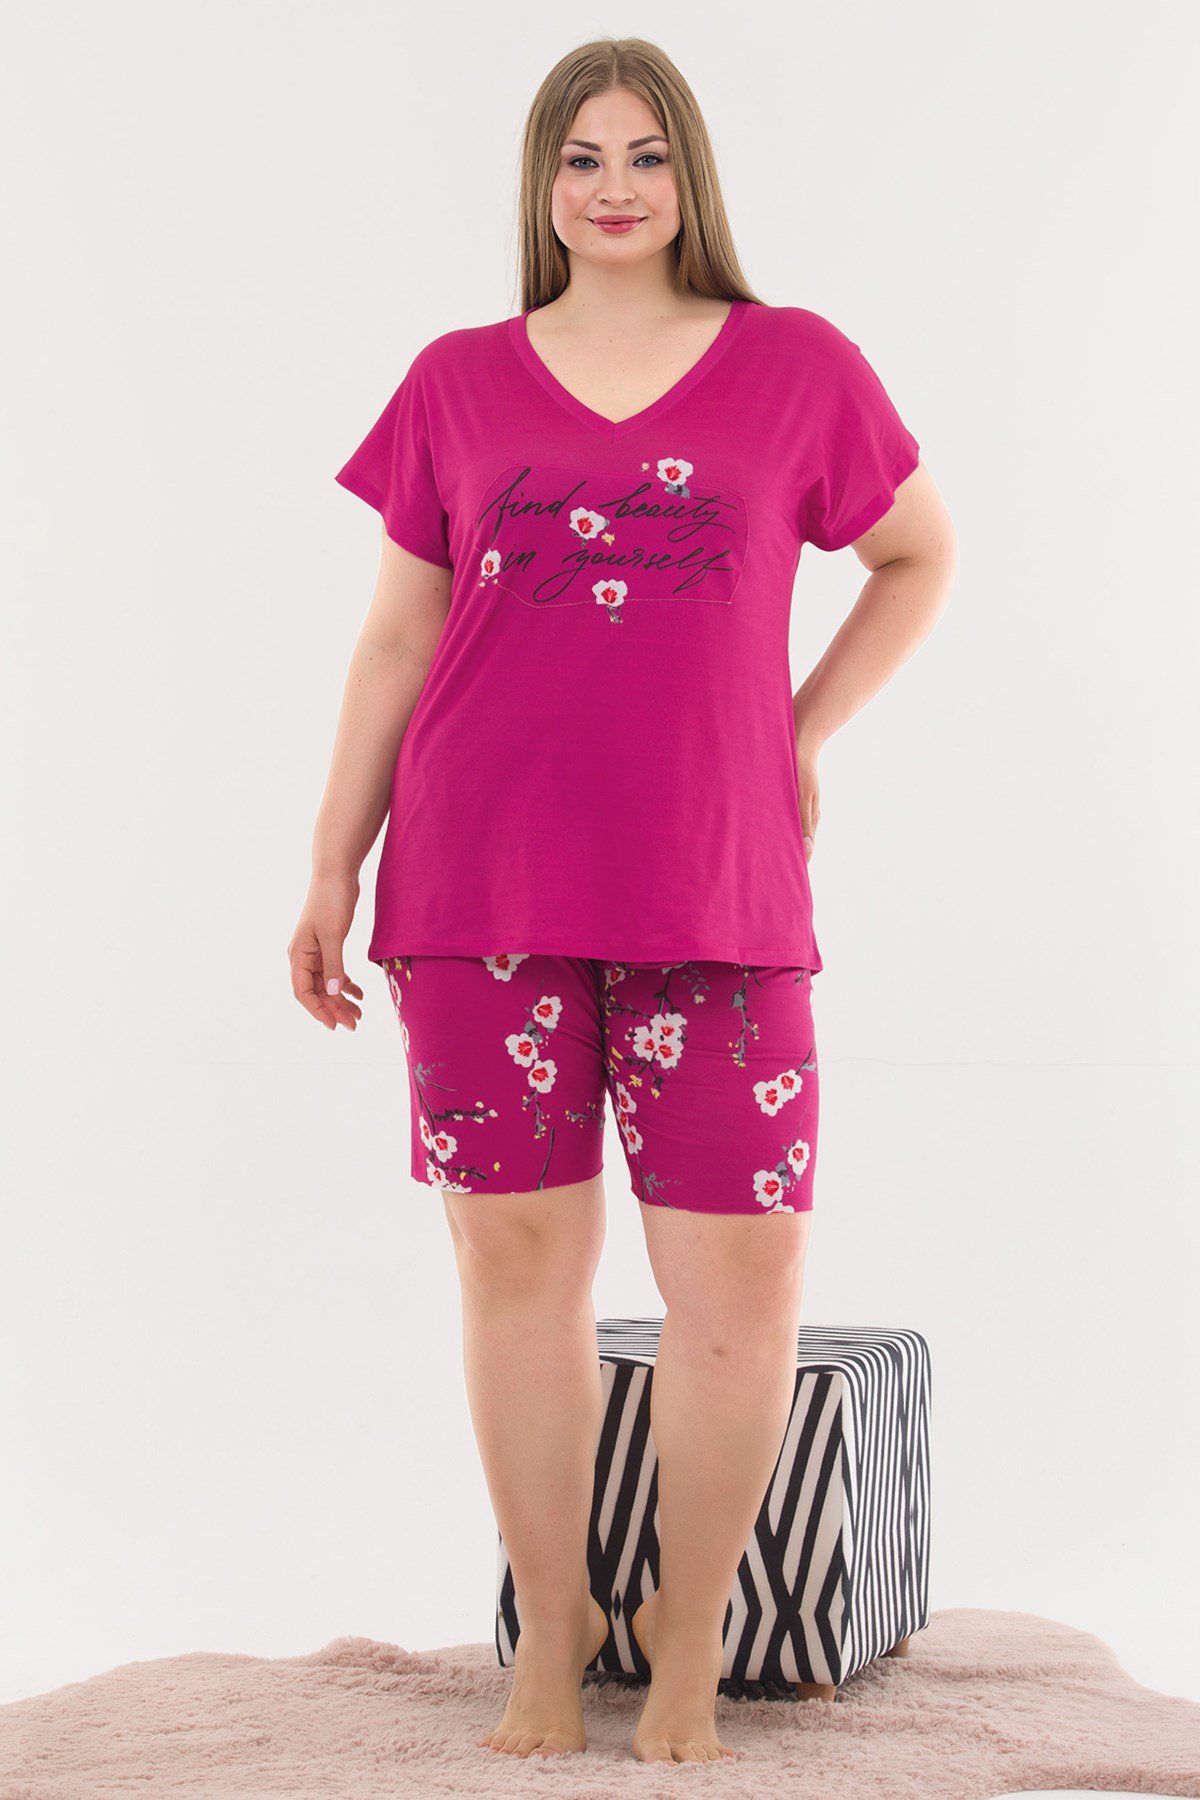 Fuşya Renk ve Çiçek Desenli Lady 10377 Büyük Beden Şortlu Pijama Takımı